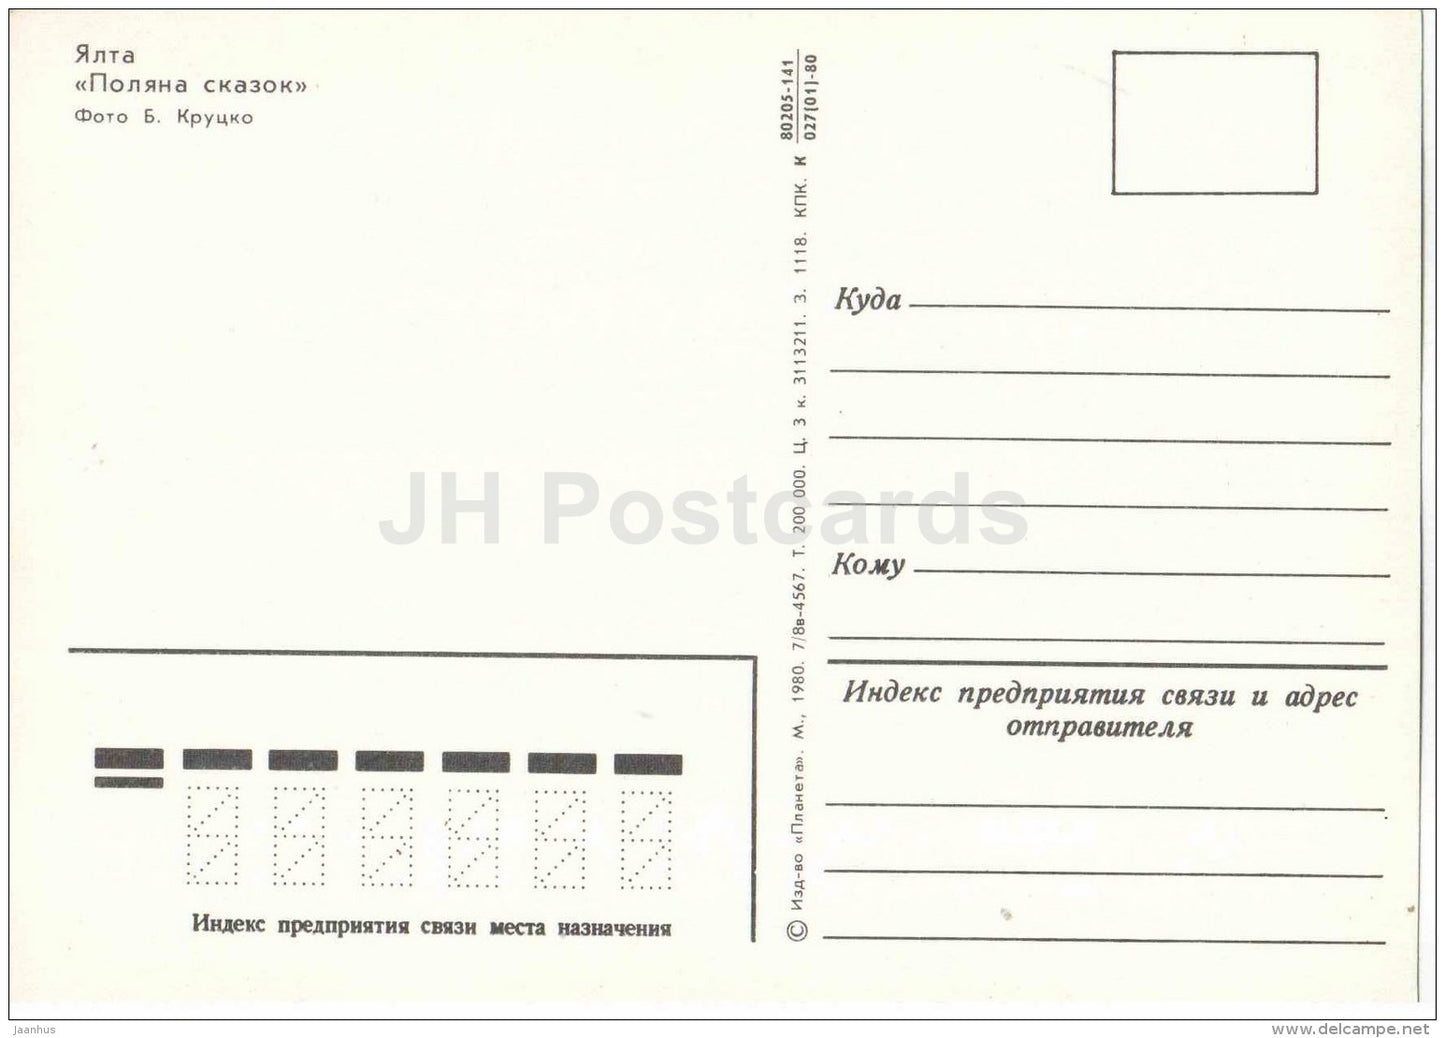 Meadow of Fairy Tales - Yalta - Crimea - 1980 - Ukraine USSR - unused - JH Postcards